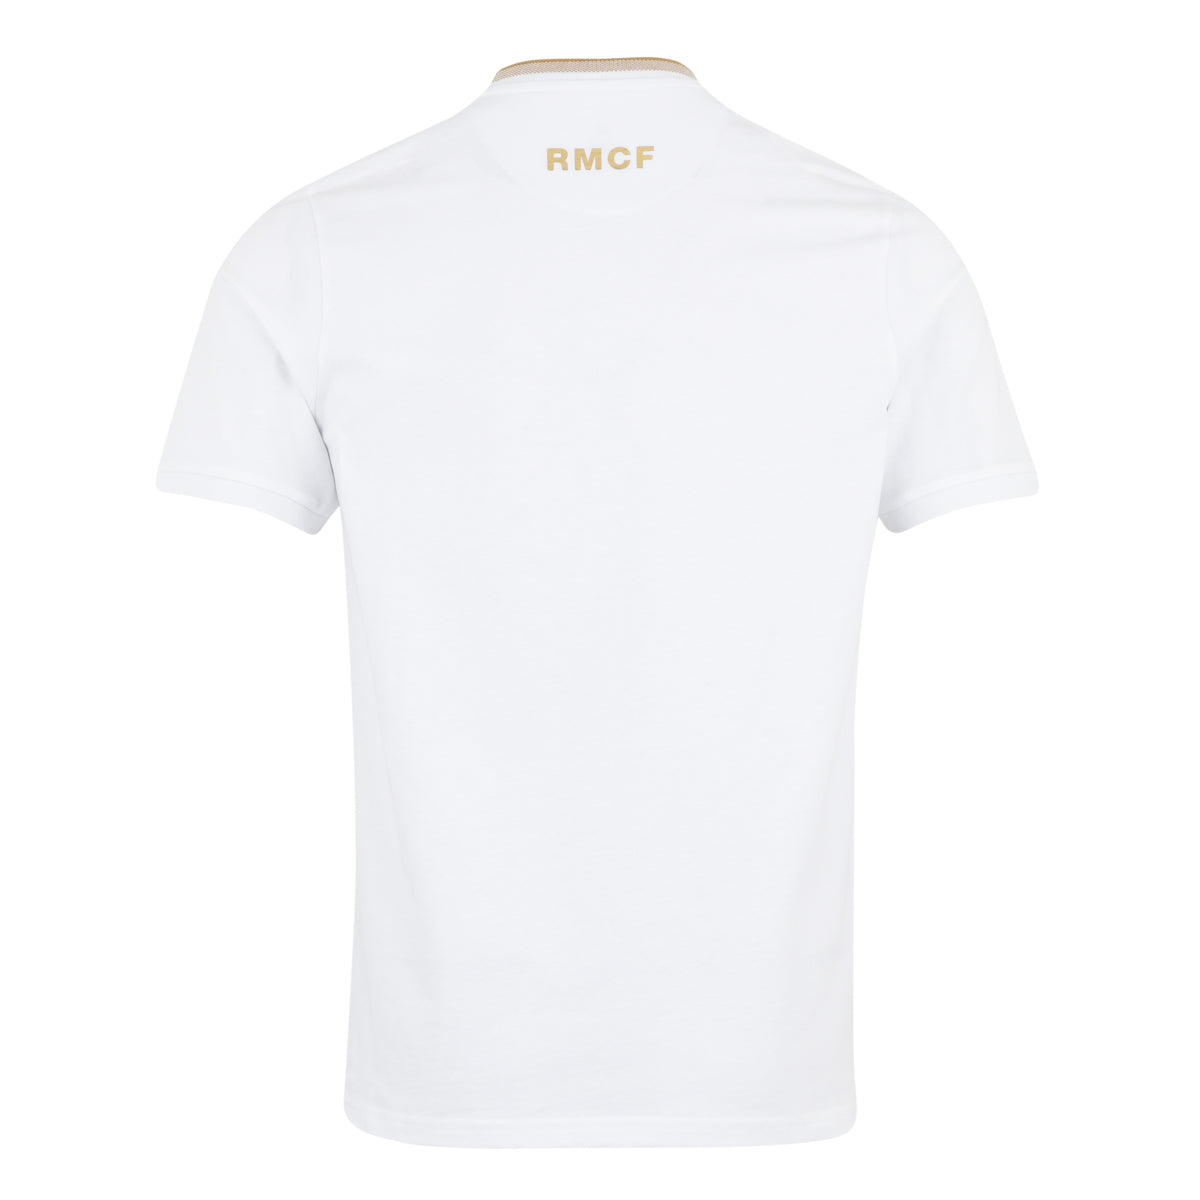 Mens White & Gold T-Shirt